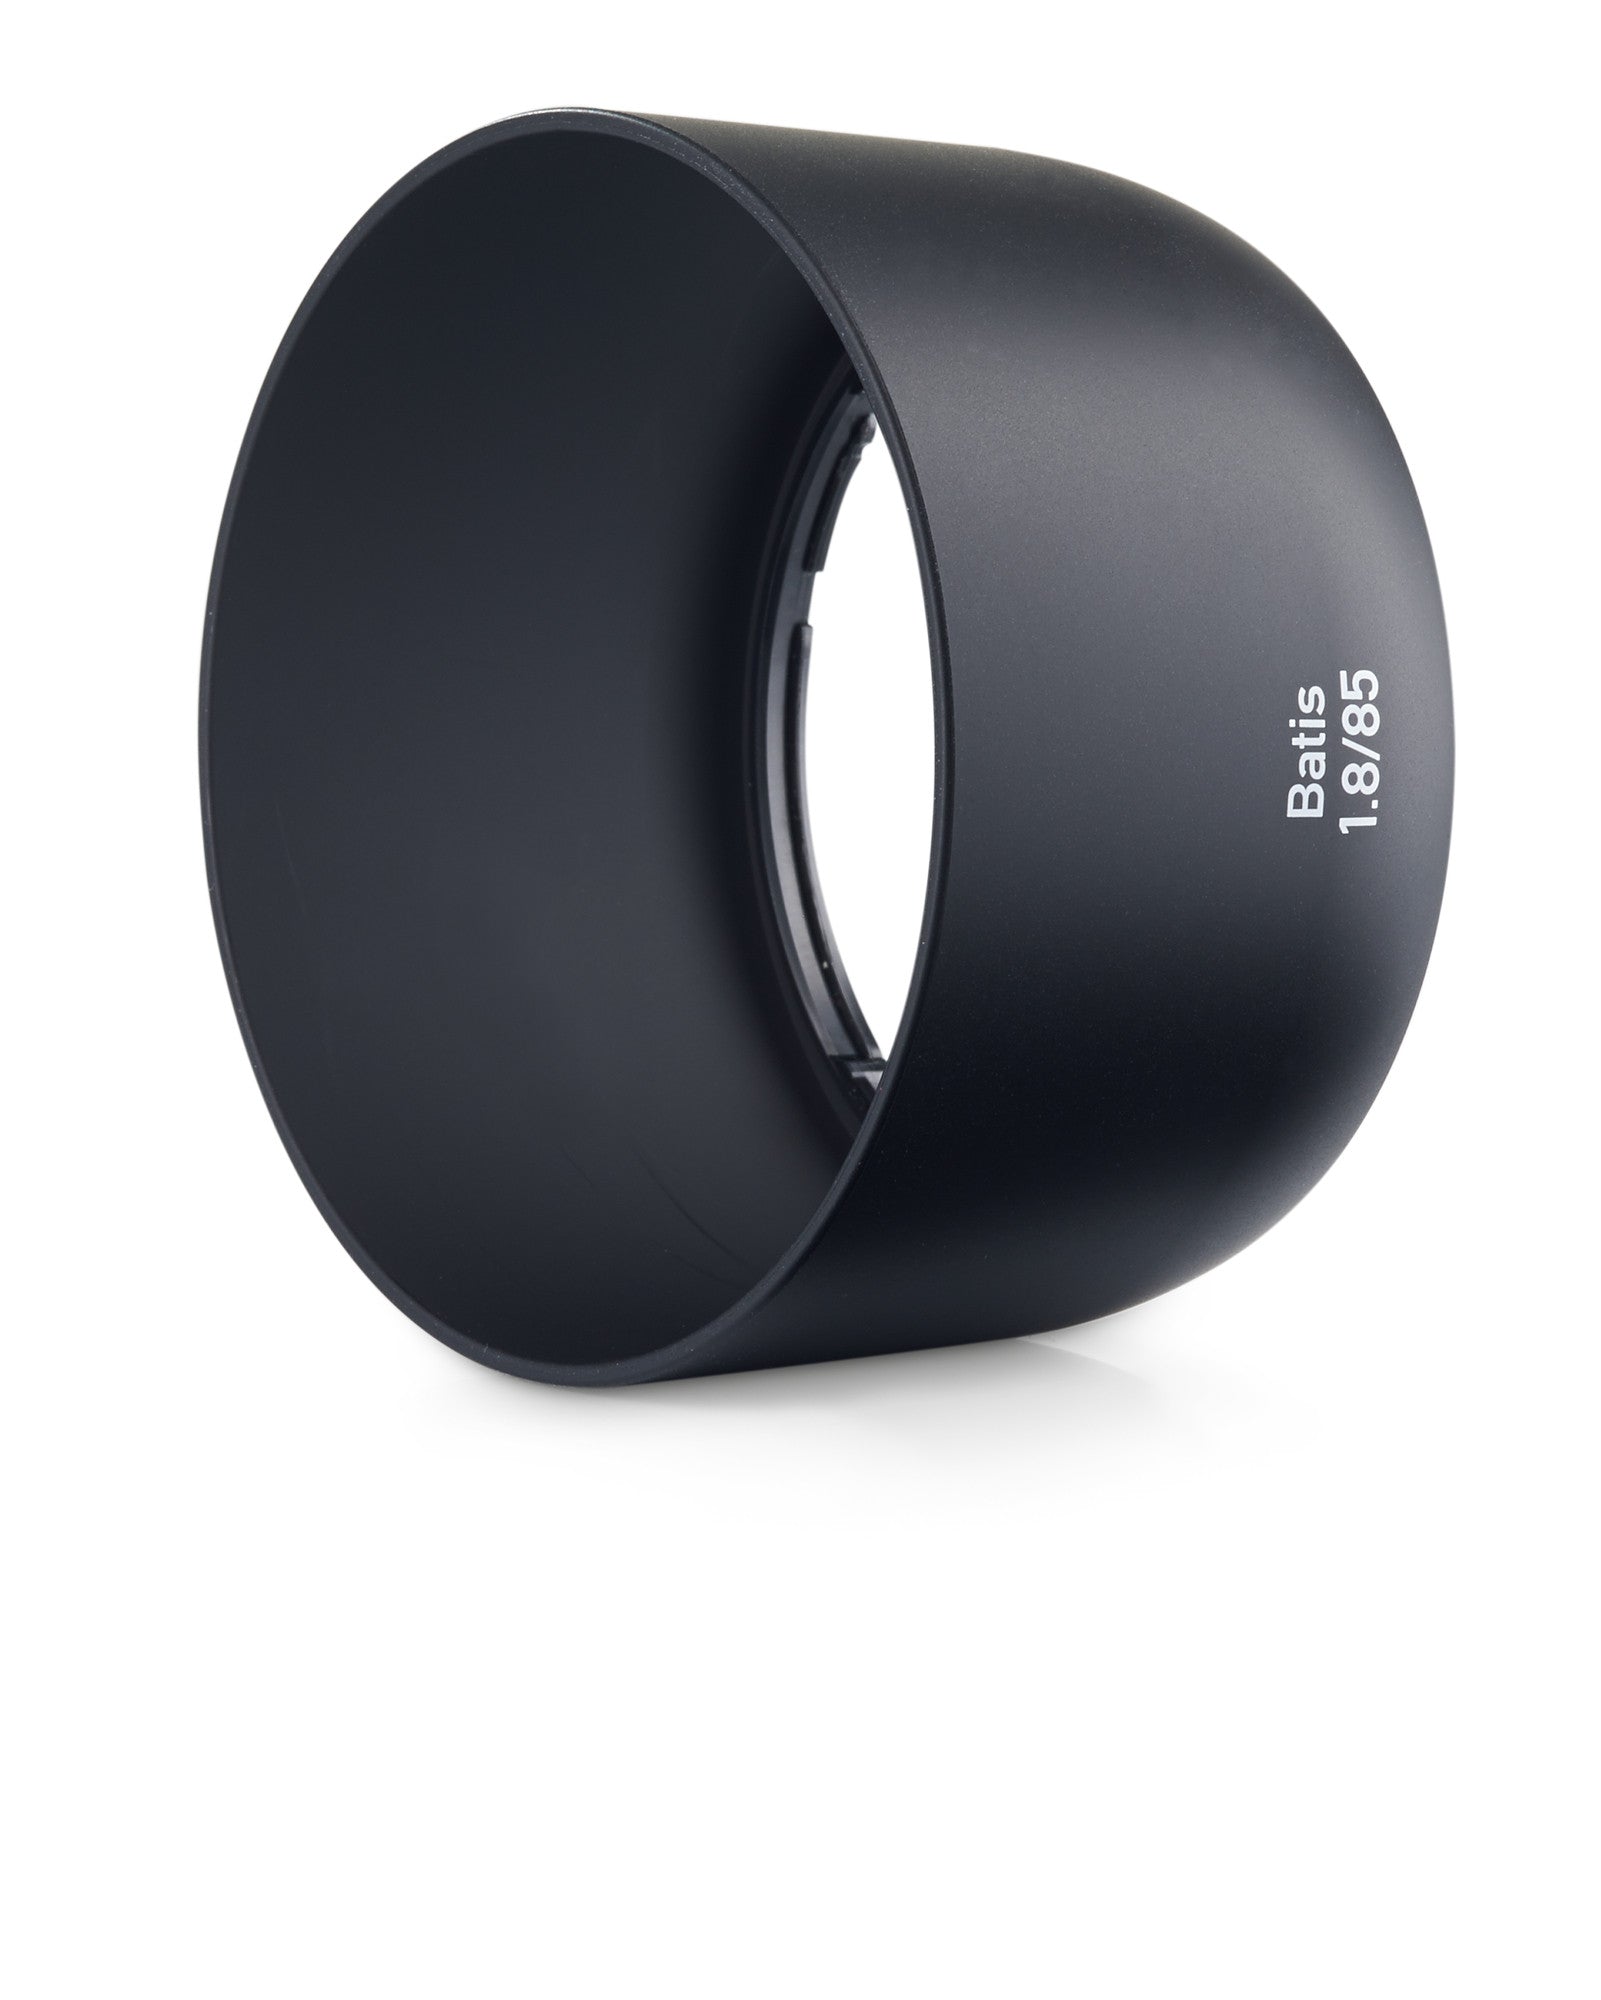 Zeiss Batis 85mm f1.8 Lens for Sony E-Mount, lenses mirrorless, Zeiss - Pictureline  - 4